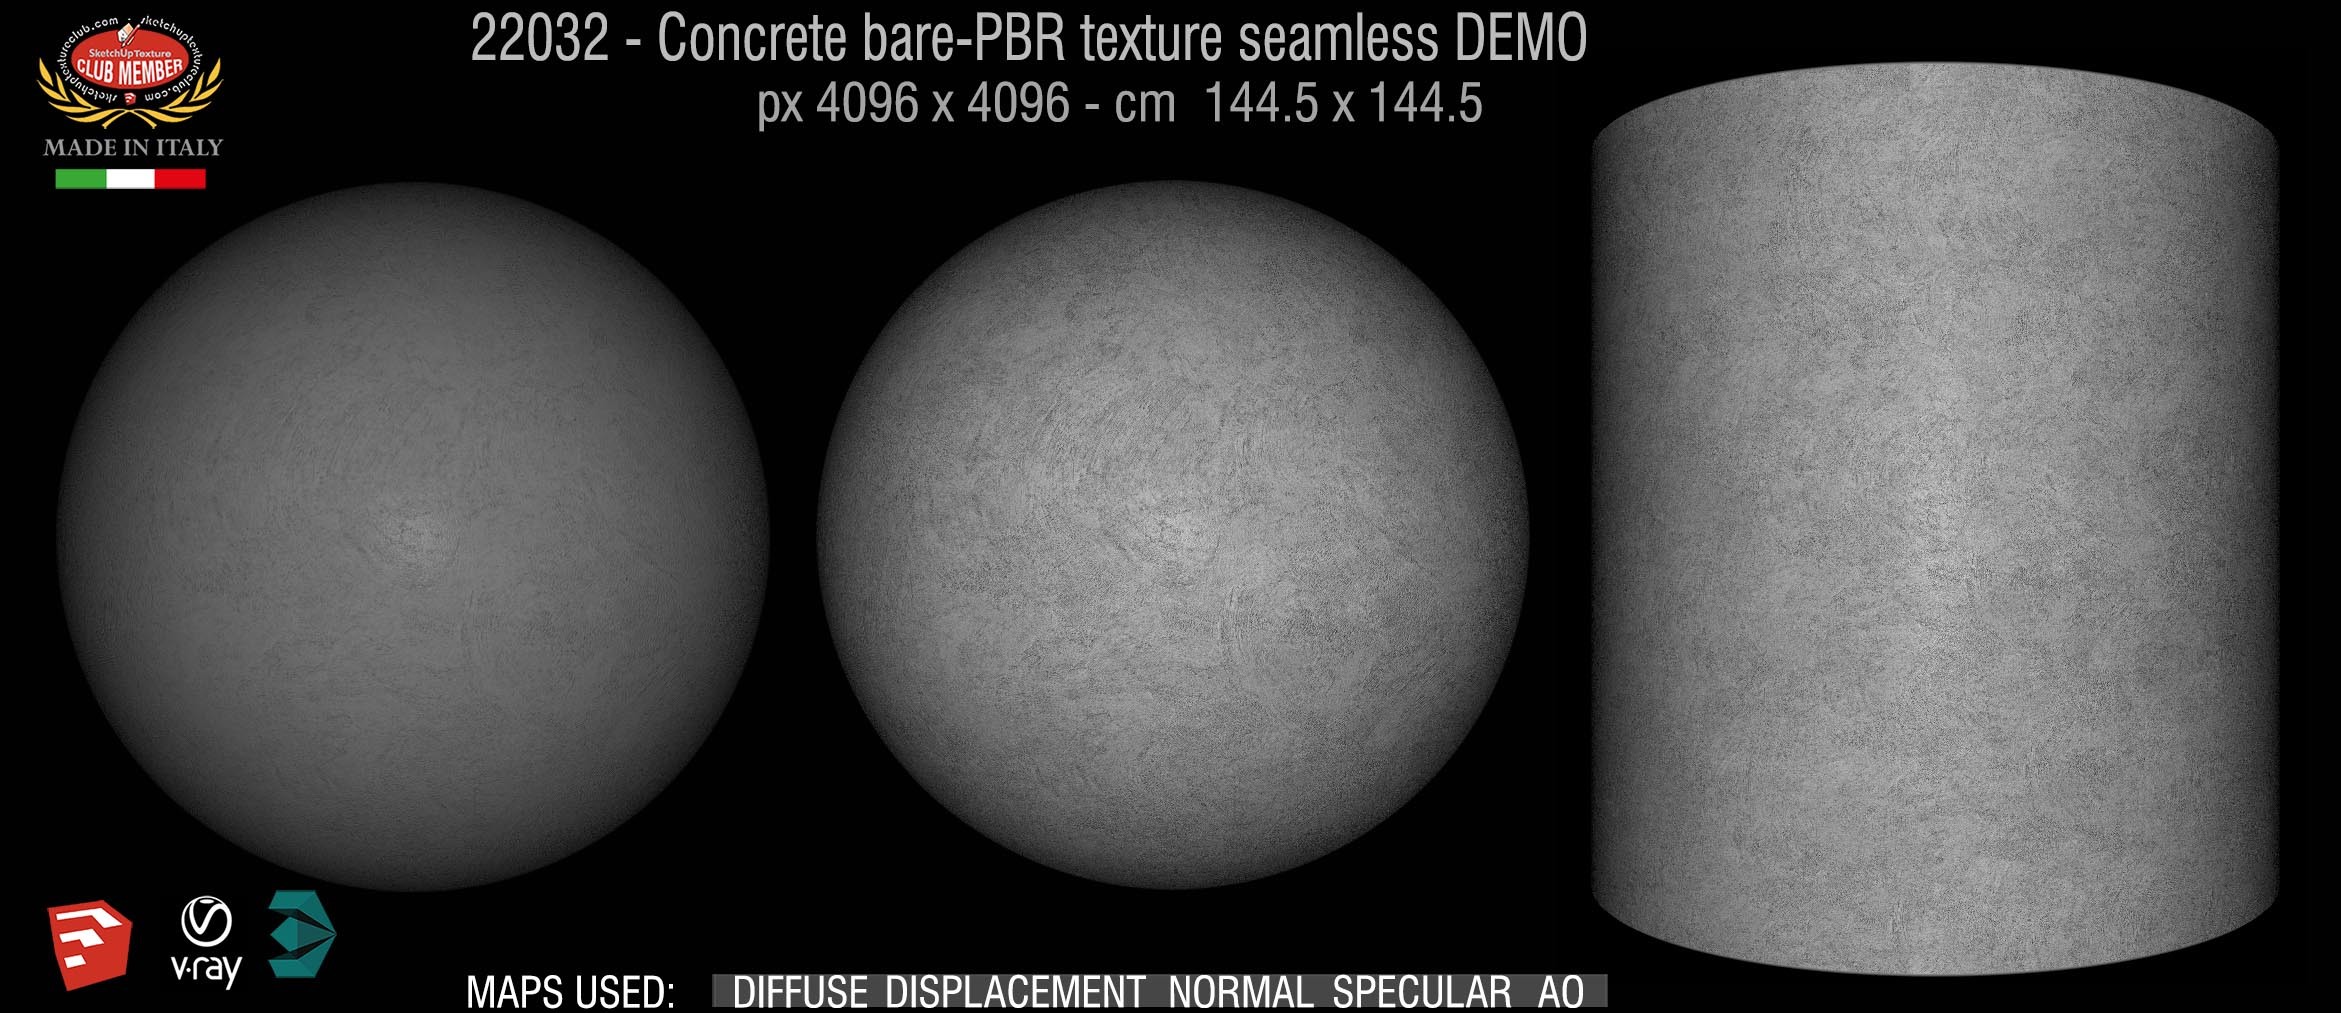 22032 Concrete bare-PBR texture seamless DEMO